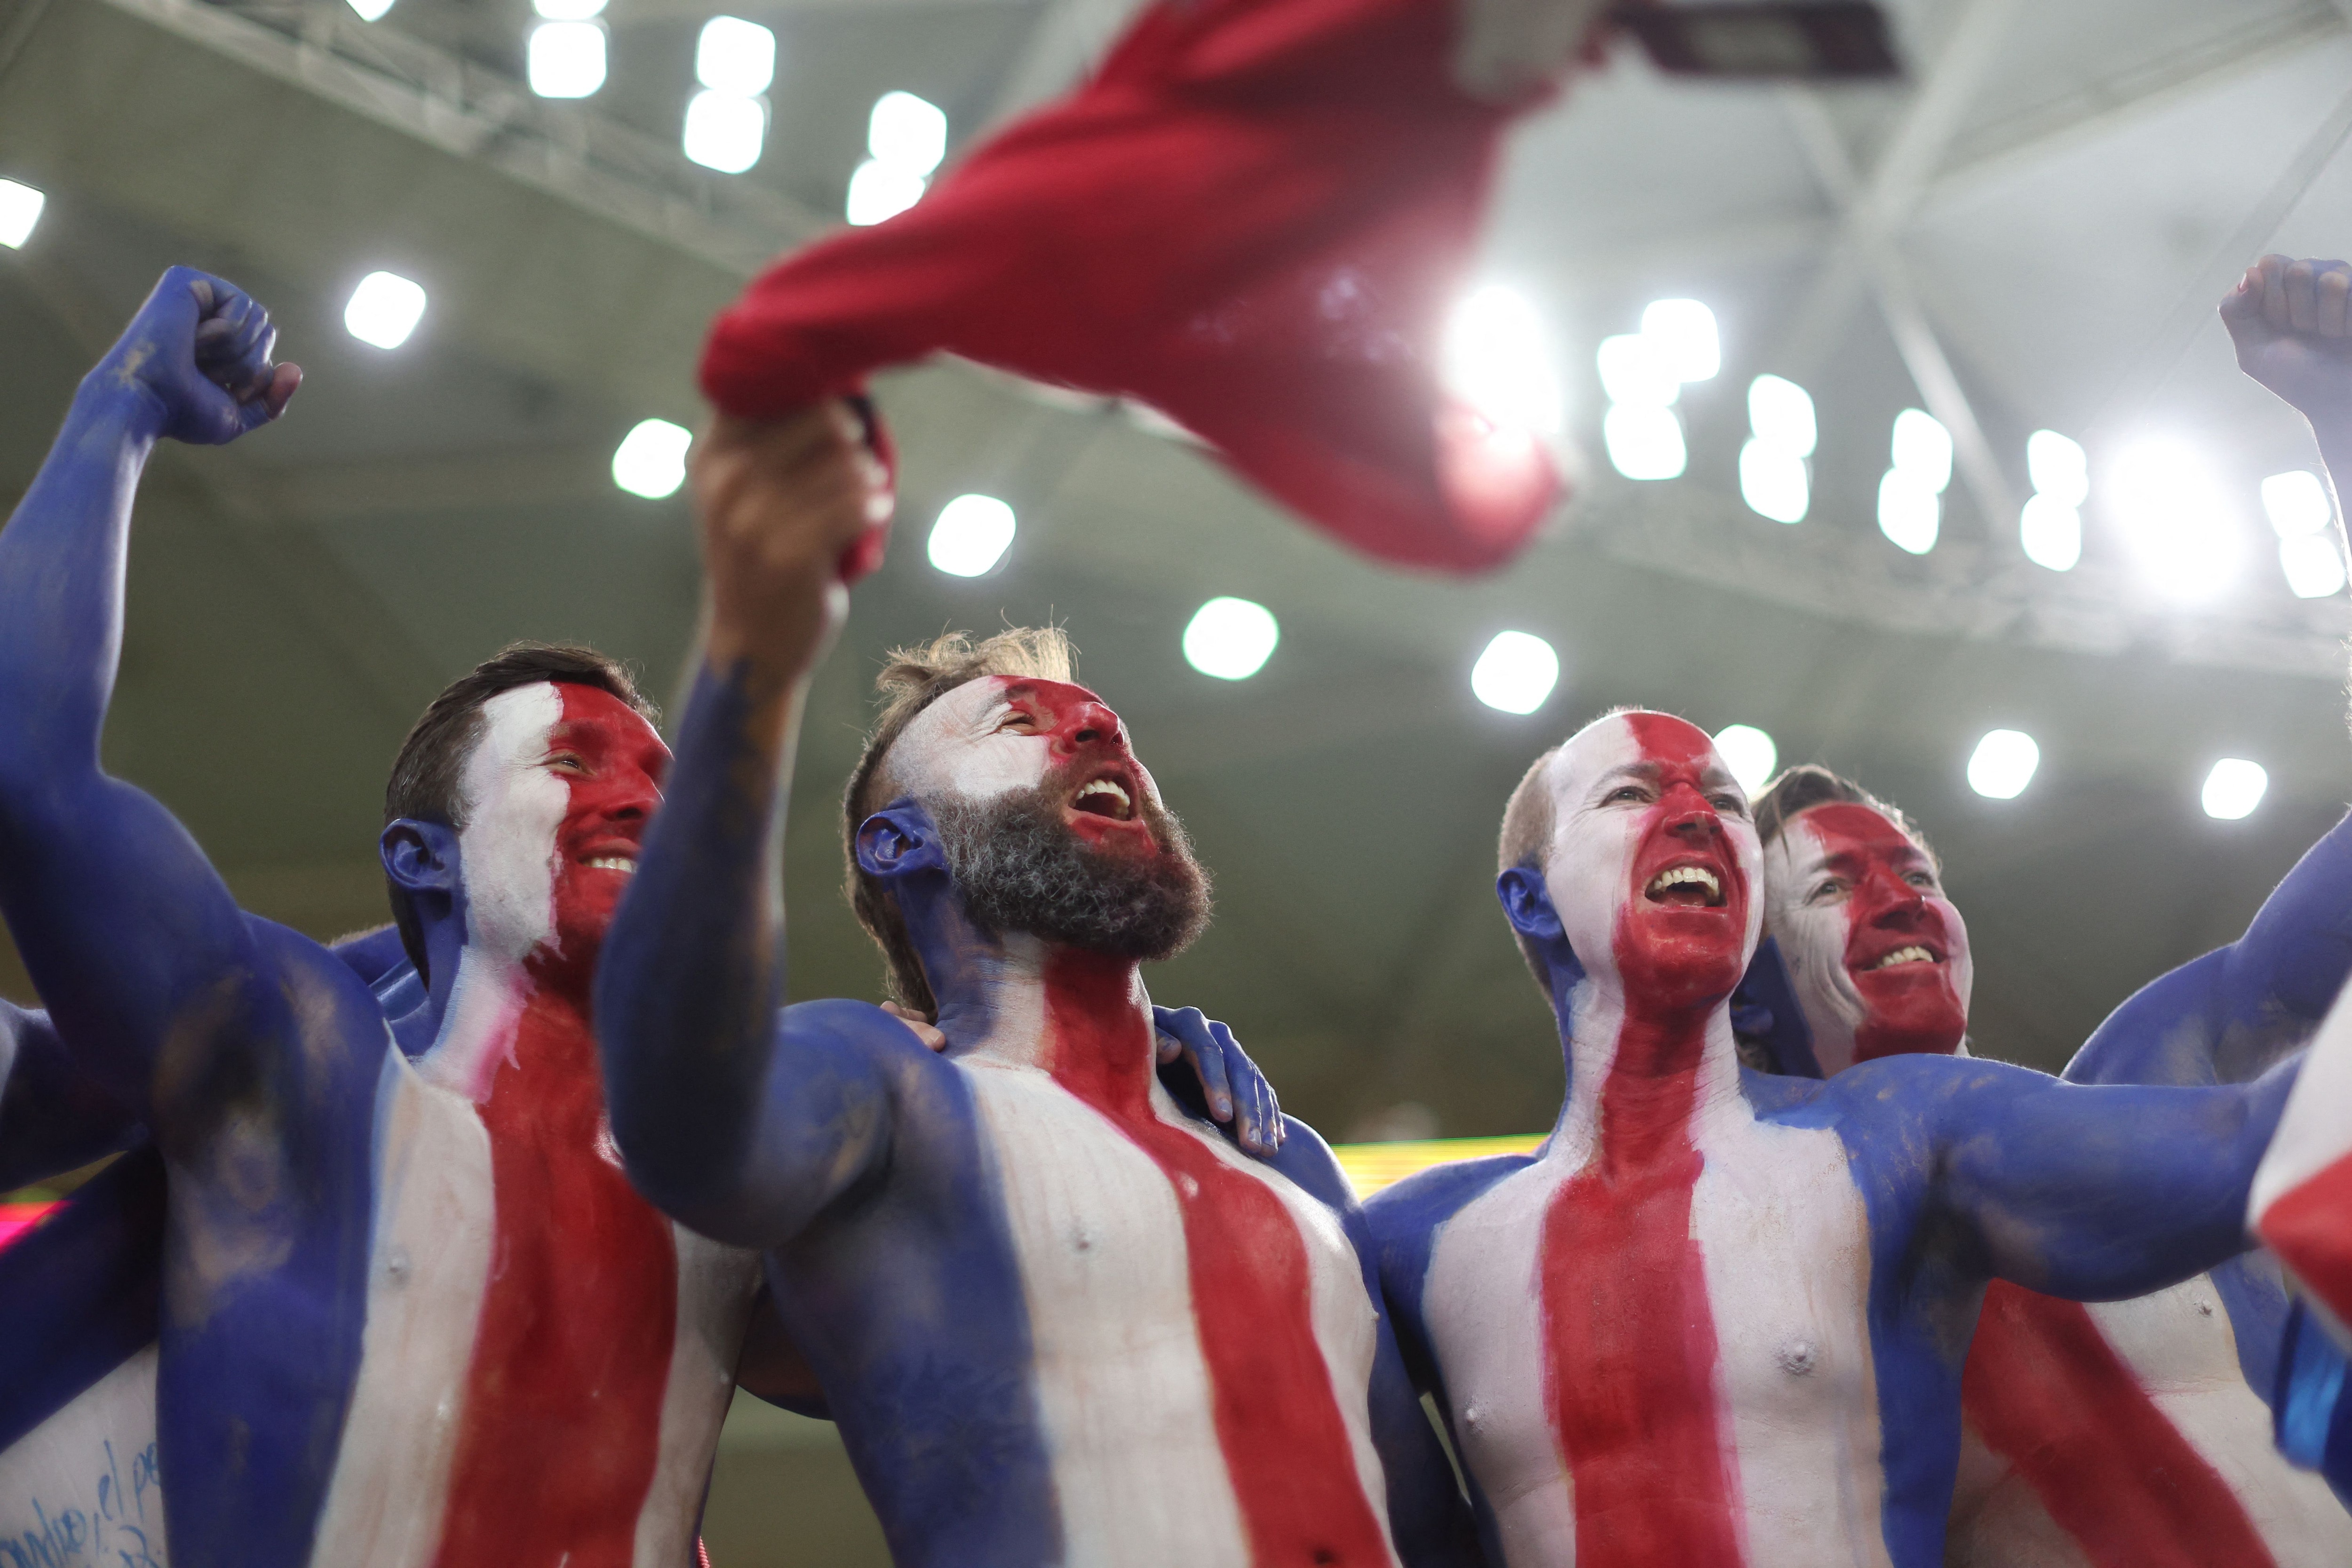 La selección de Costa Rica disputará su sexto Mundial en la historia. REUTERS/Carl Recine